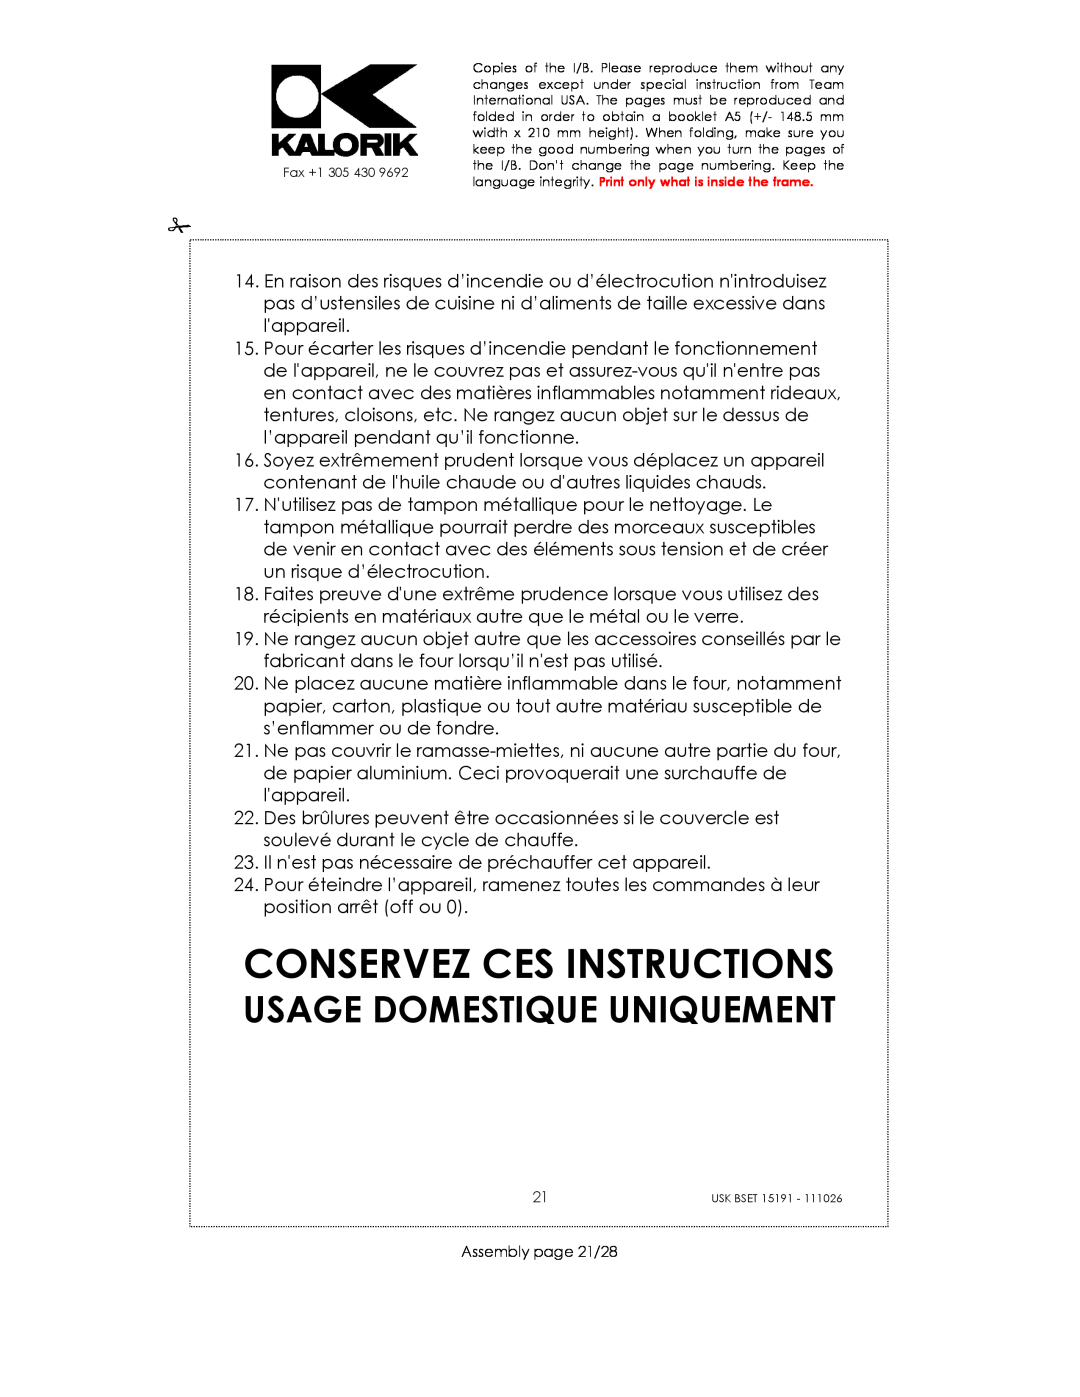 Kalorik USK BSET 15191 manual Conservez Ces Instructions, Usage Domestique Uniquement 